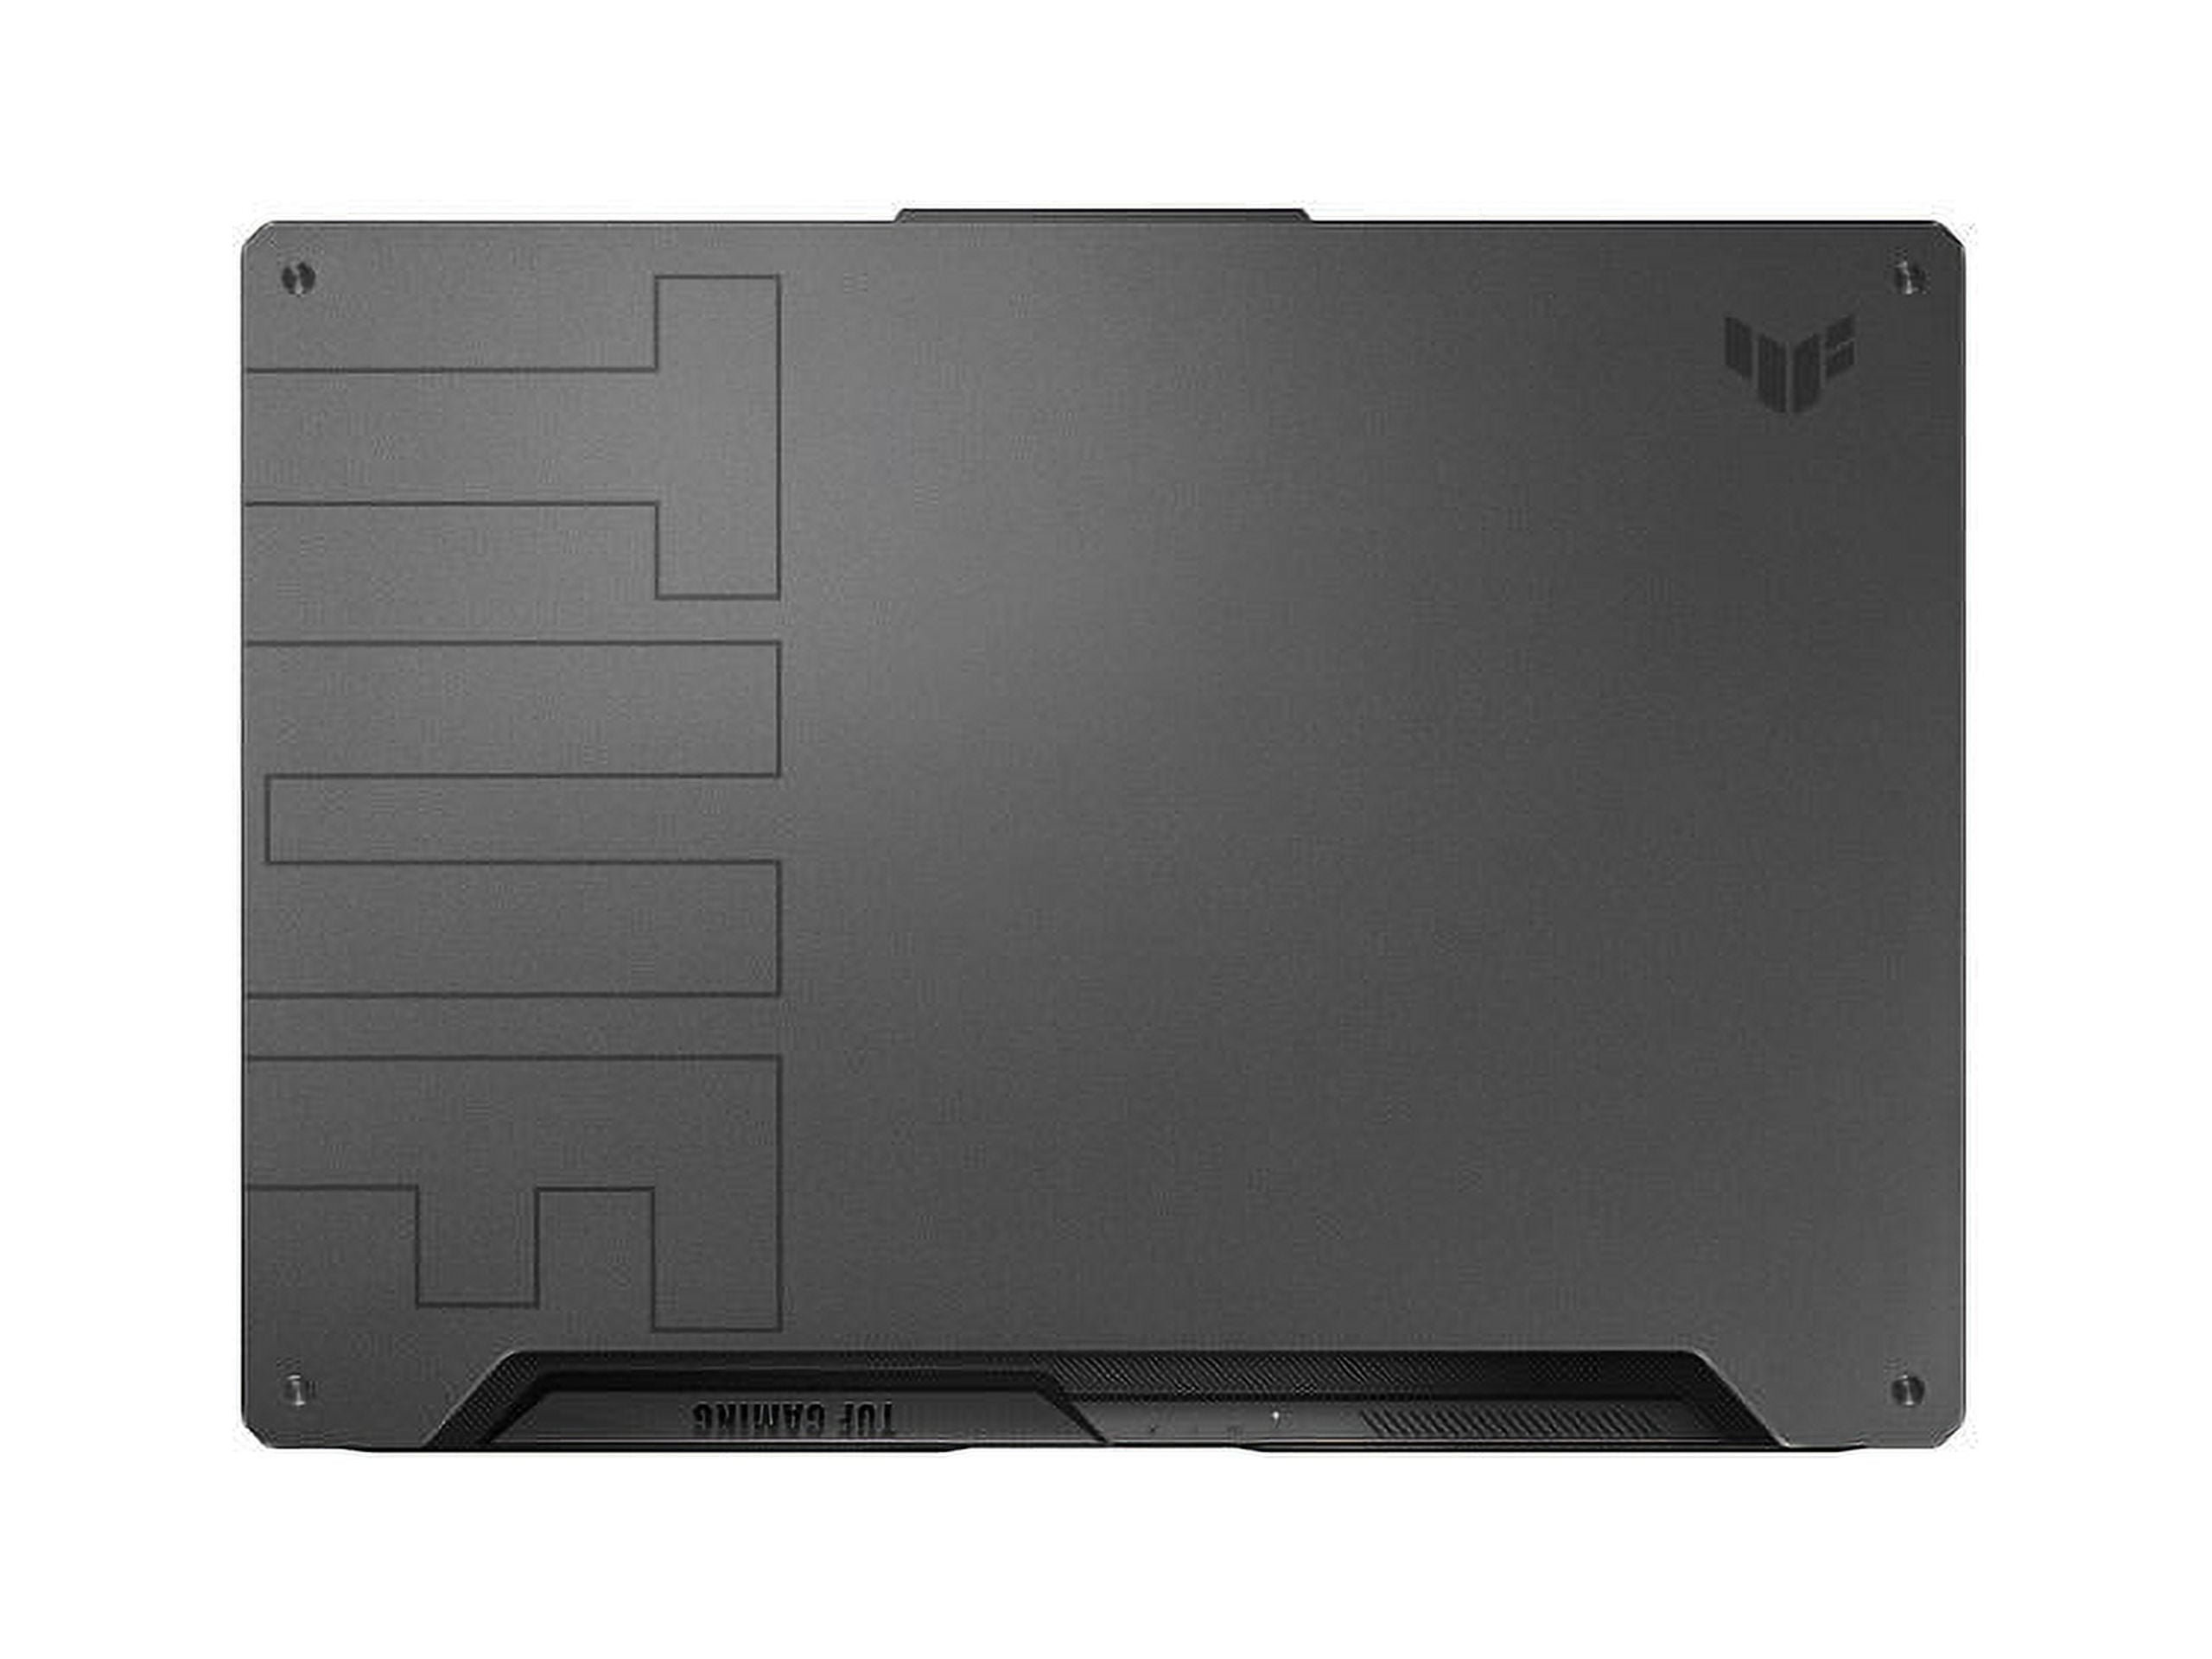 ASUS TUF Gaming F15 Gaming Laptop, 15.6\